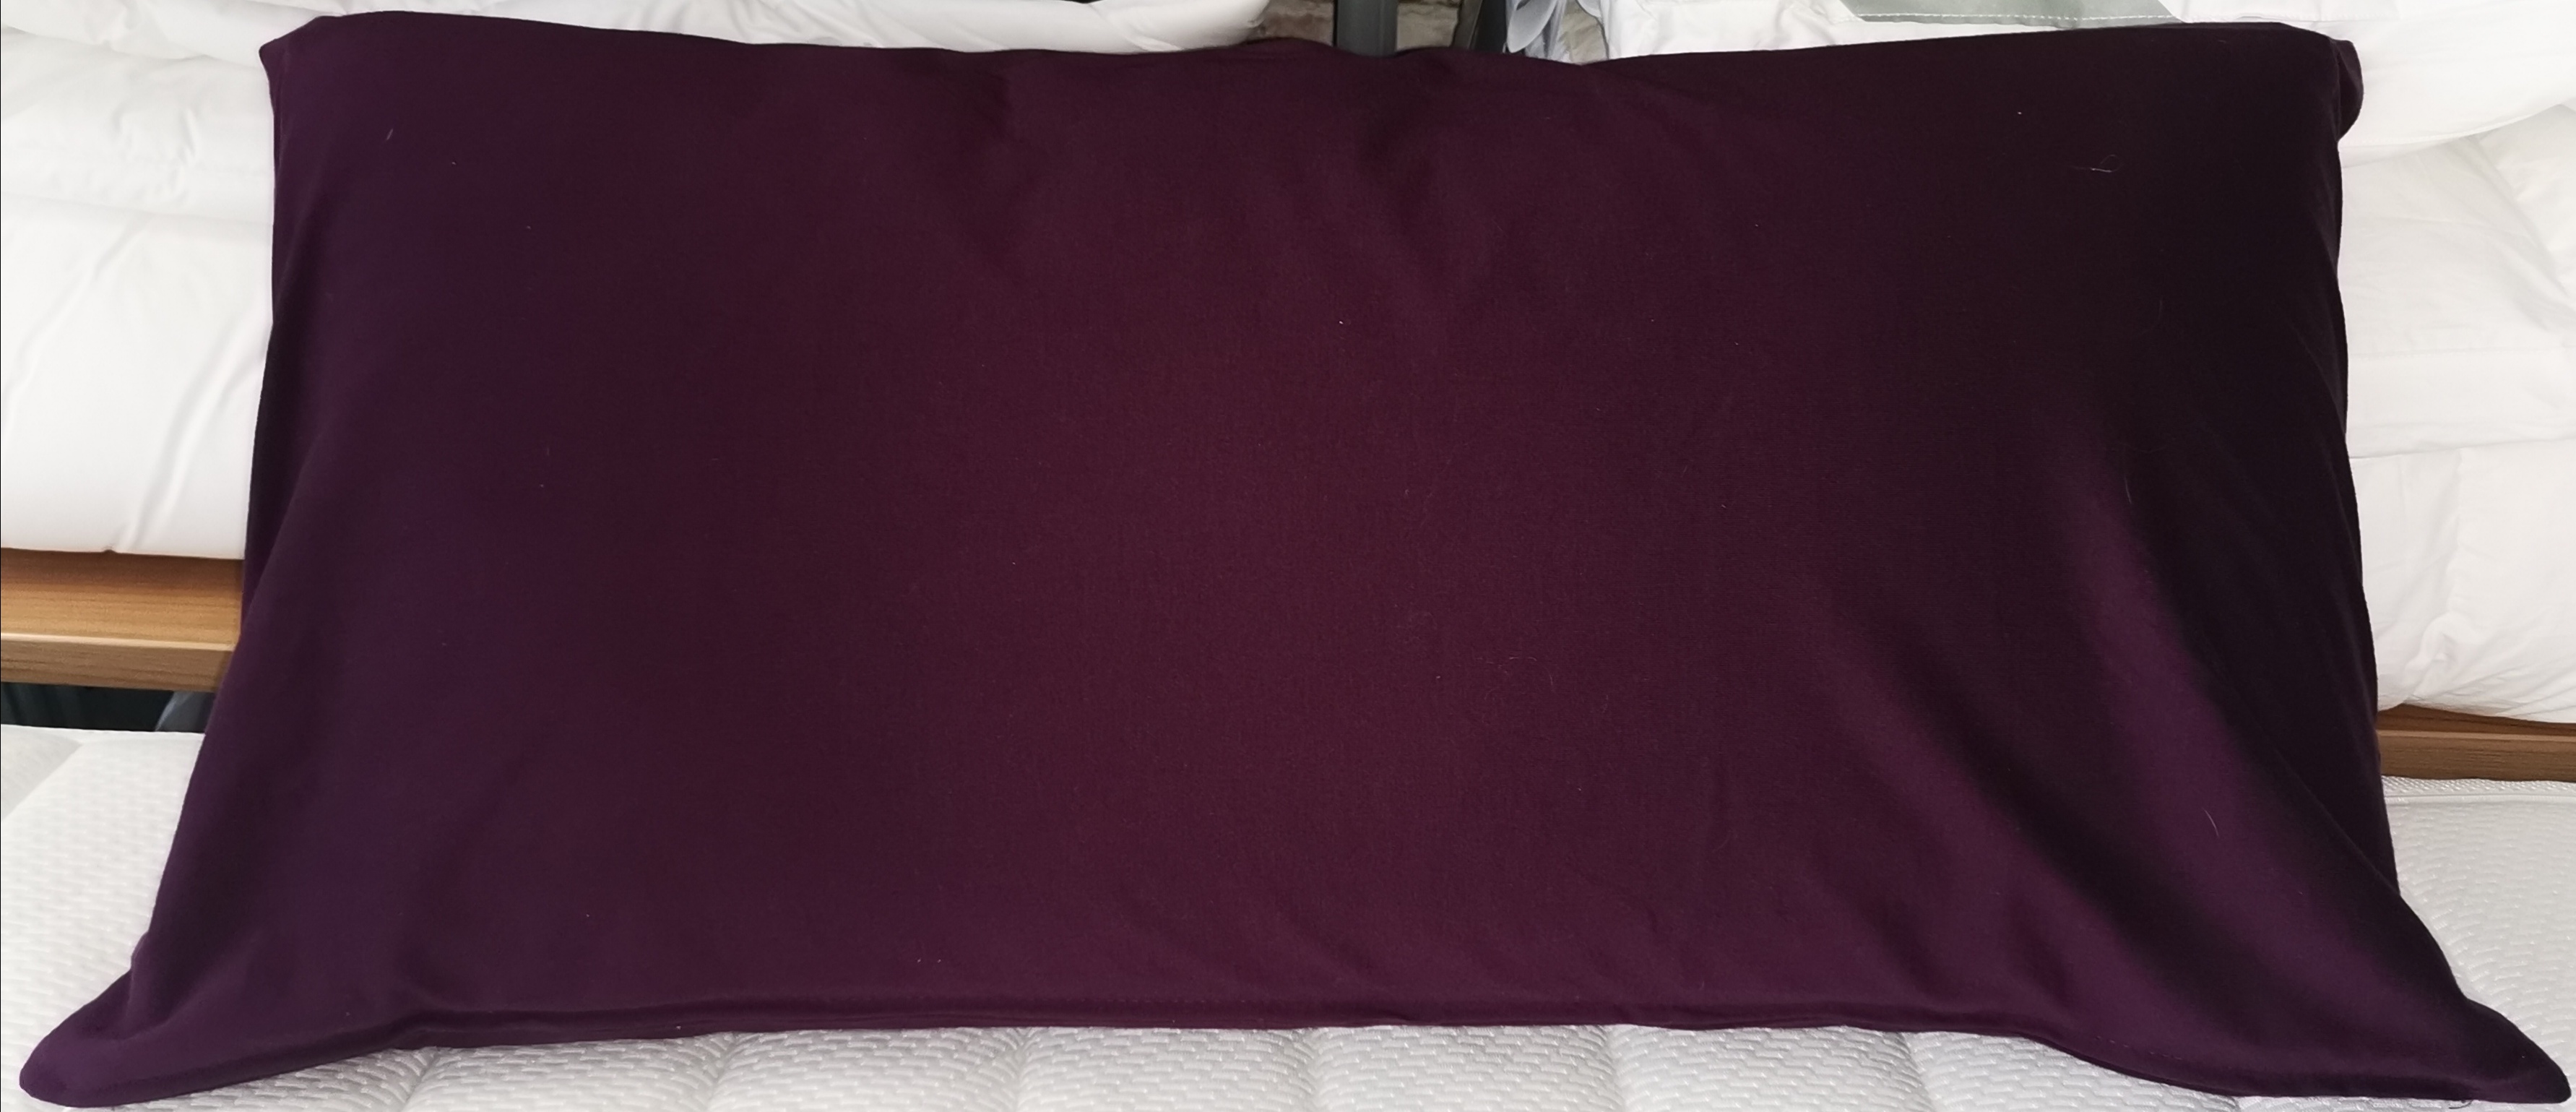 Unsere Kneer Kissenbezüge aus hochwertigem Edel-Zwirn-Jersey sind in 44  Farben und erschiedenen Größen erhältlich. - Reidelshöfer Das Bettenhaus